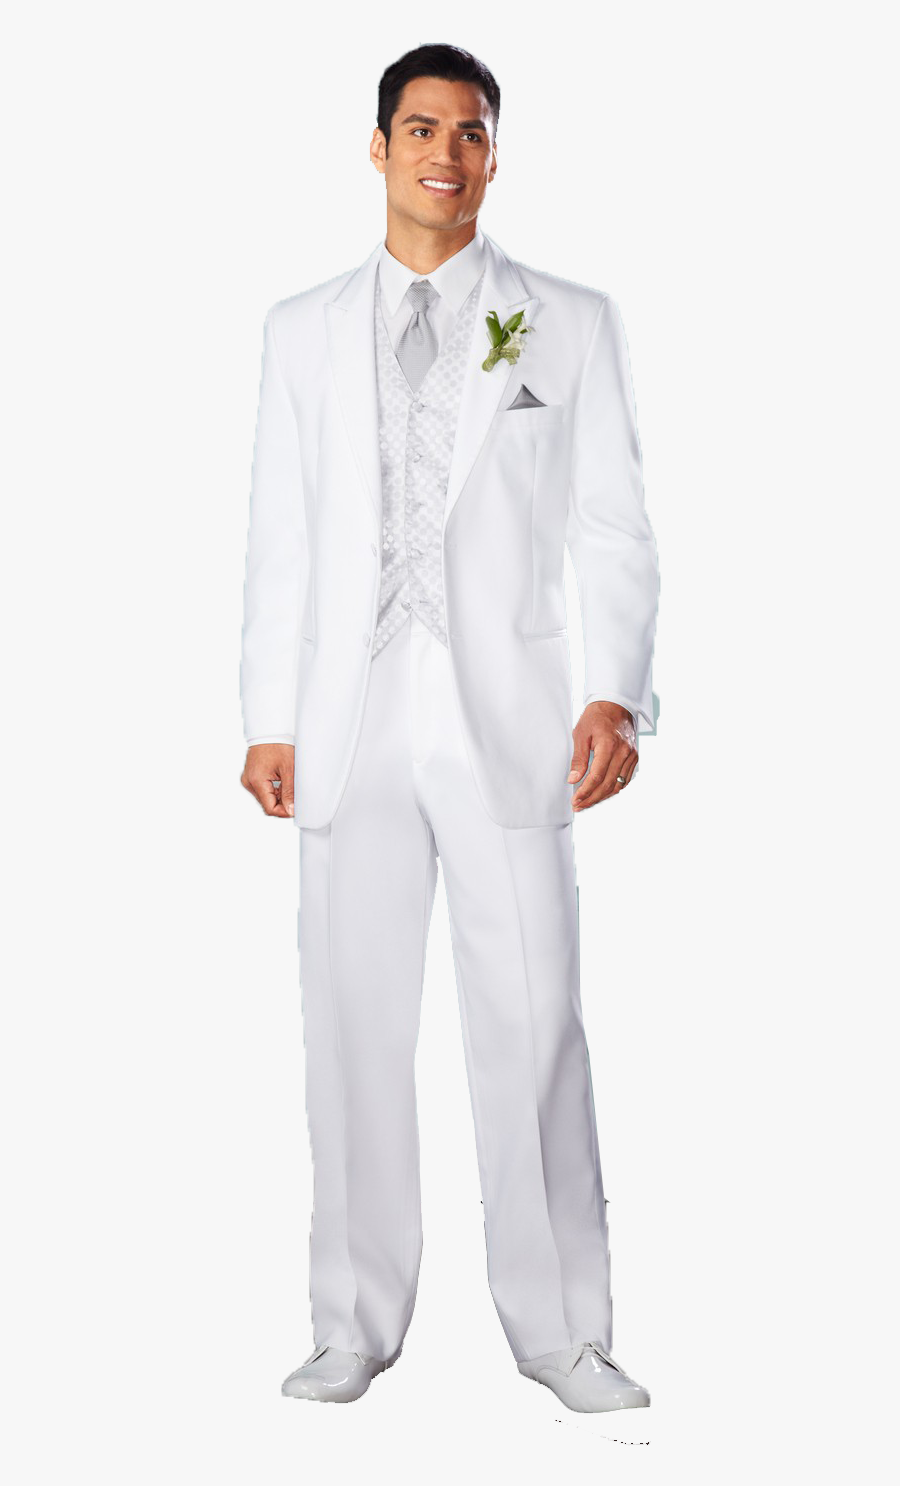 White Tuxedo Suit Png Photo - Tuxedo, Transparent Clipart